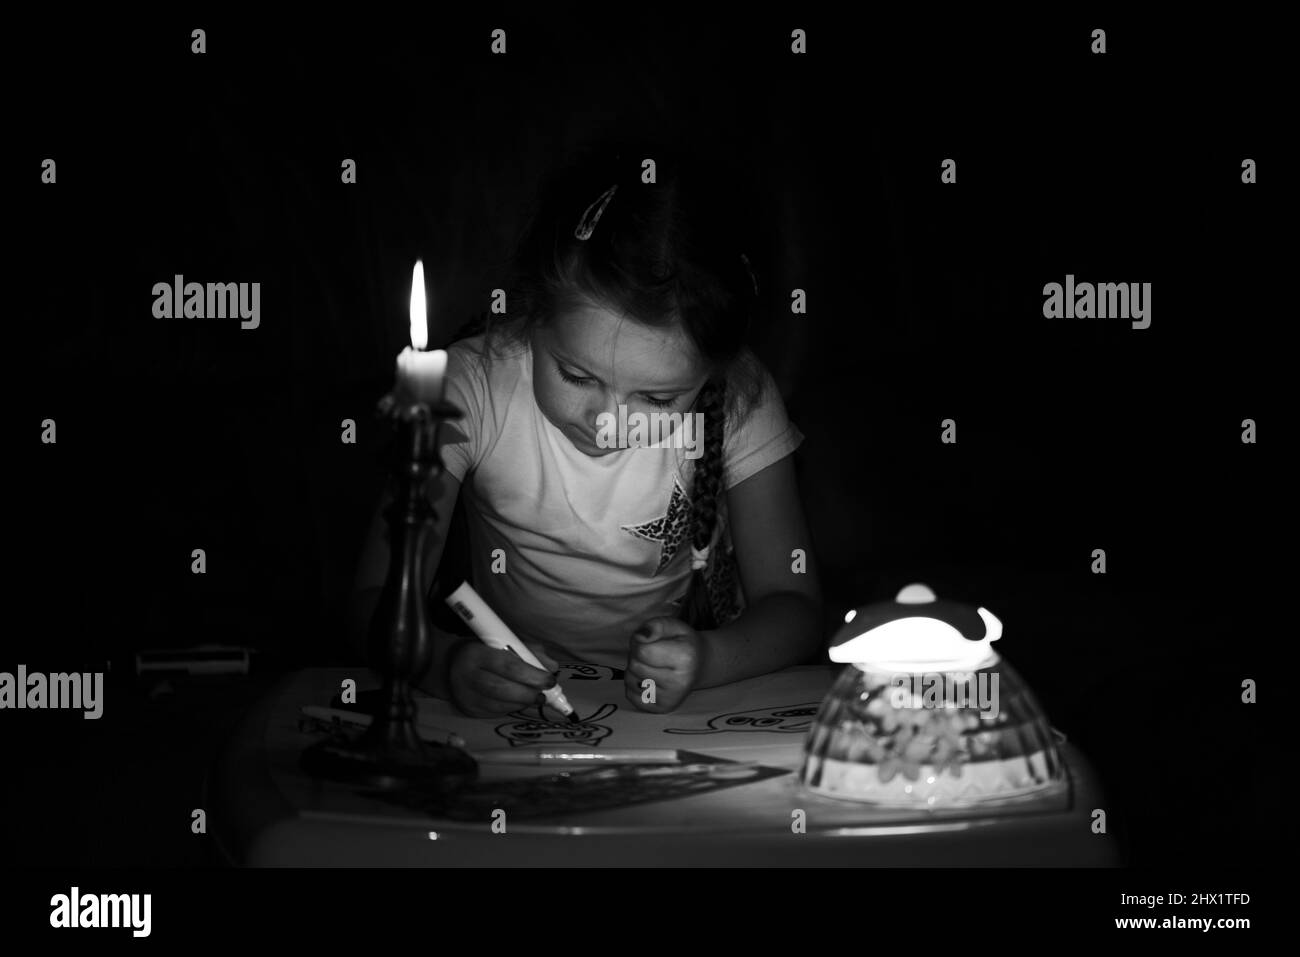 Une petite fille dessine des personnages de fantaisie près d'une bougie dans une pièce sombre. Enfant faisant ce qu'il préfère lors d'une panne de courant. En noir et blanc. Banque D'Images